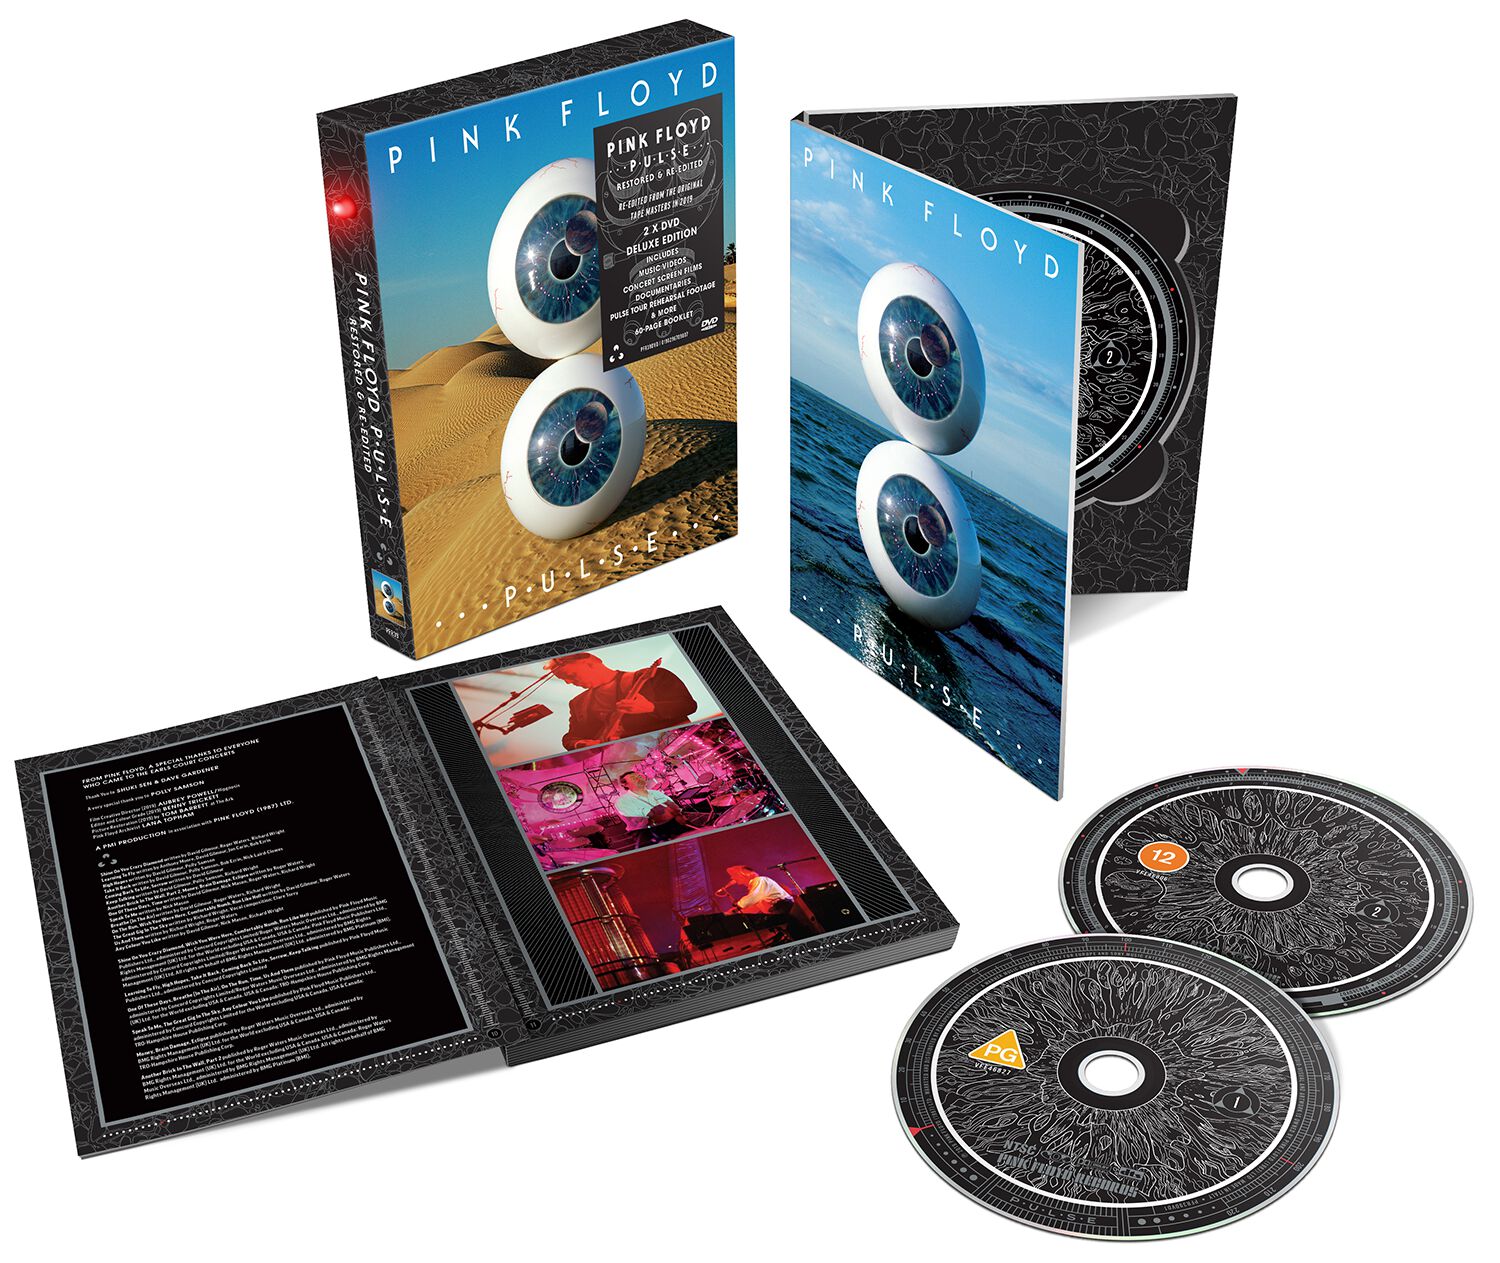 Pink Floyd P.U.L.S.E. DVD multicolor